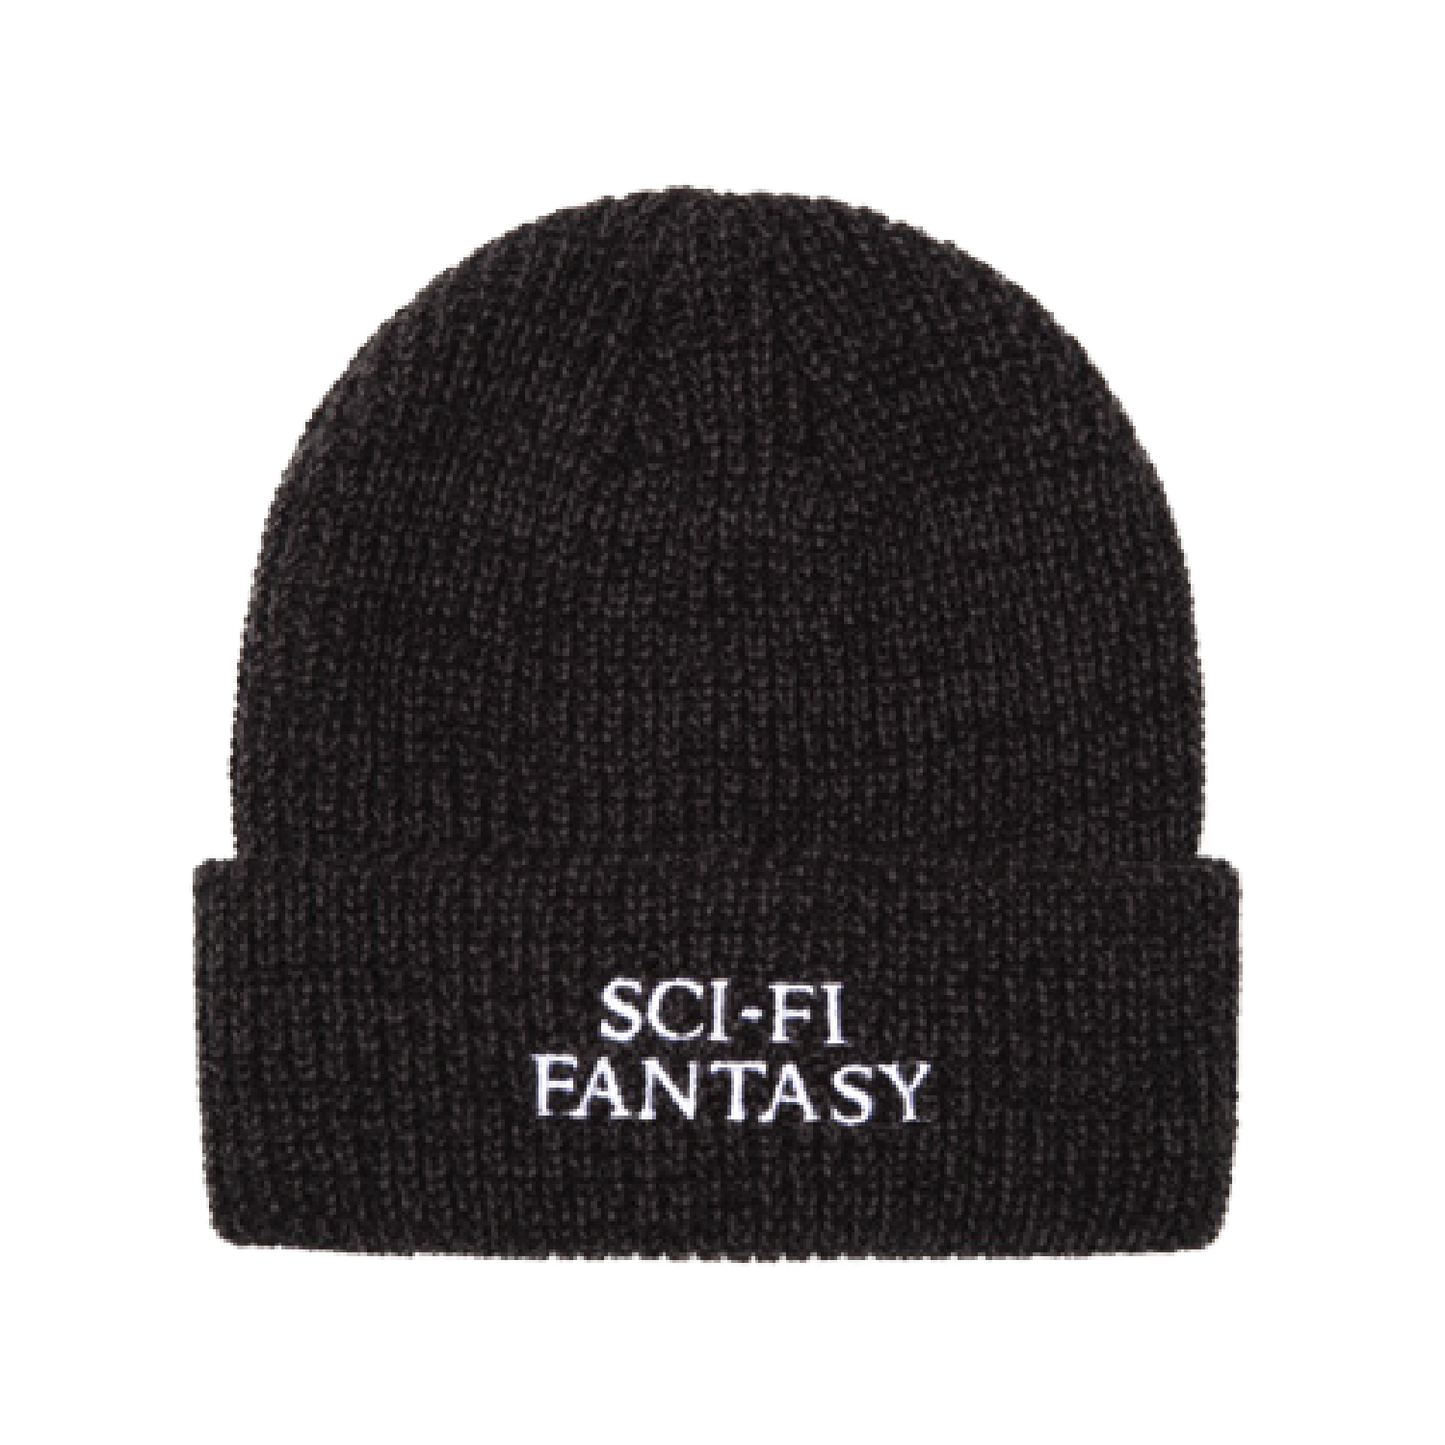 Sci-Fi Fantasy Mixed Yarn Logo Beanie - Black Grey